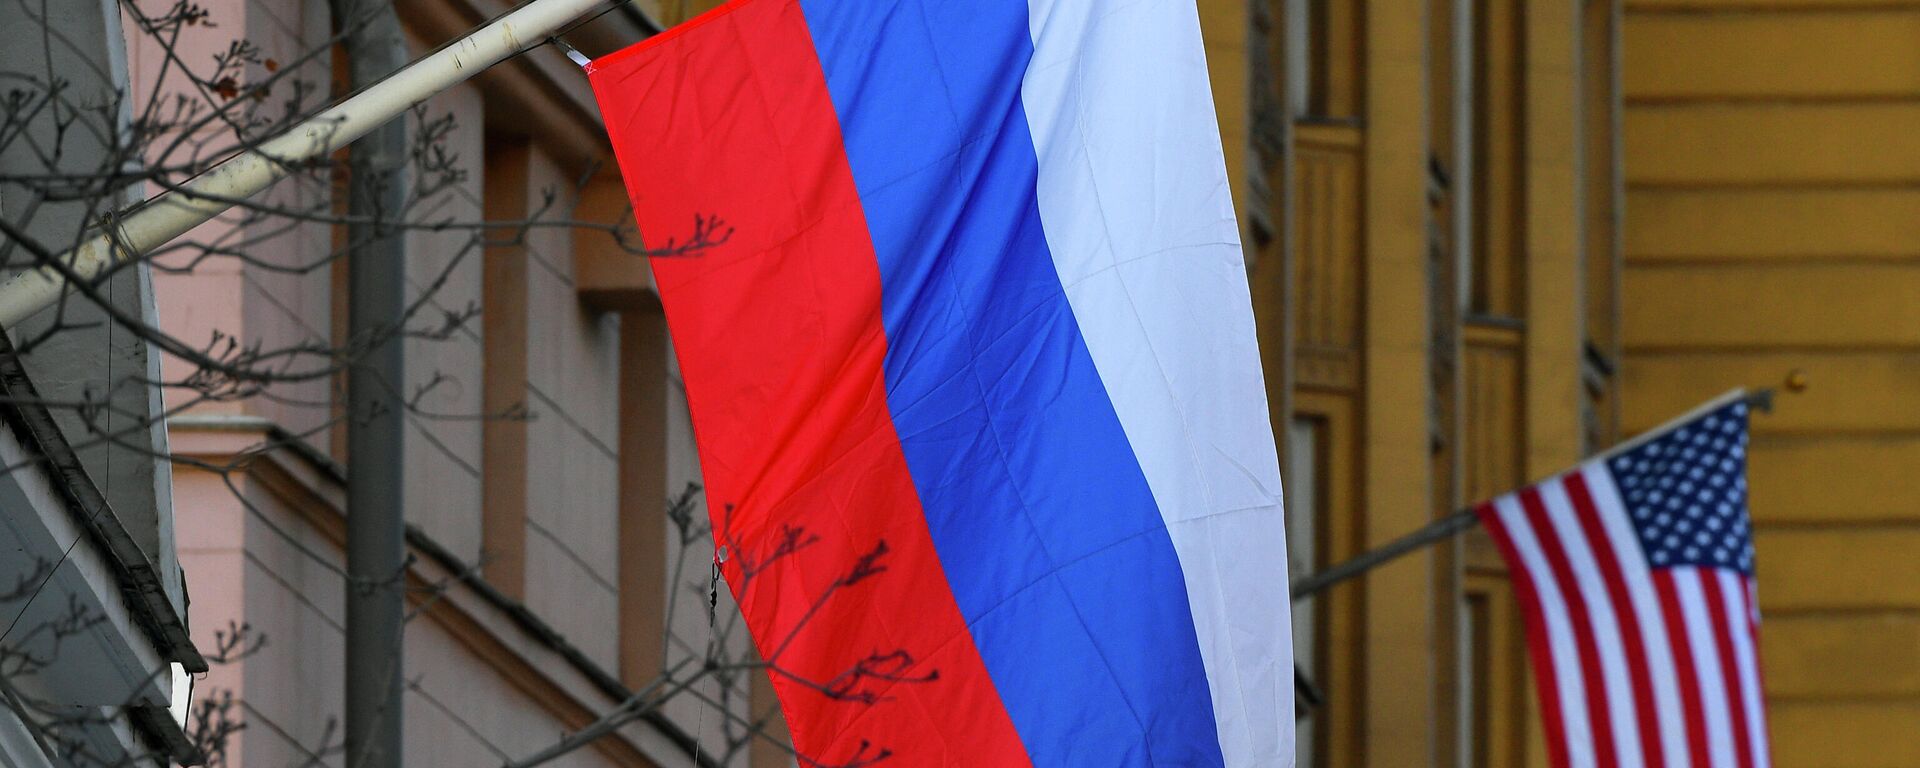 Banderas de Rusia y EEUU en la Embajada estadounidense en Moscú - Sputnik Mundo, 1920, 10.07.2021